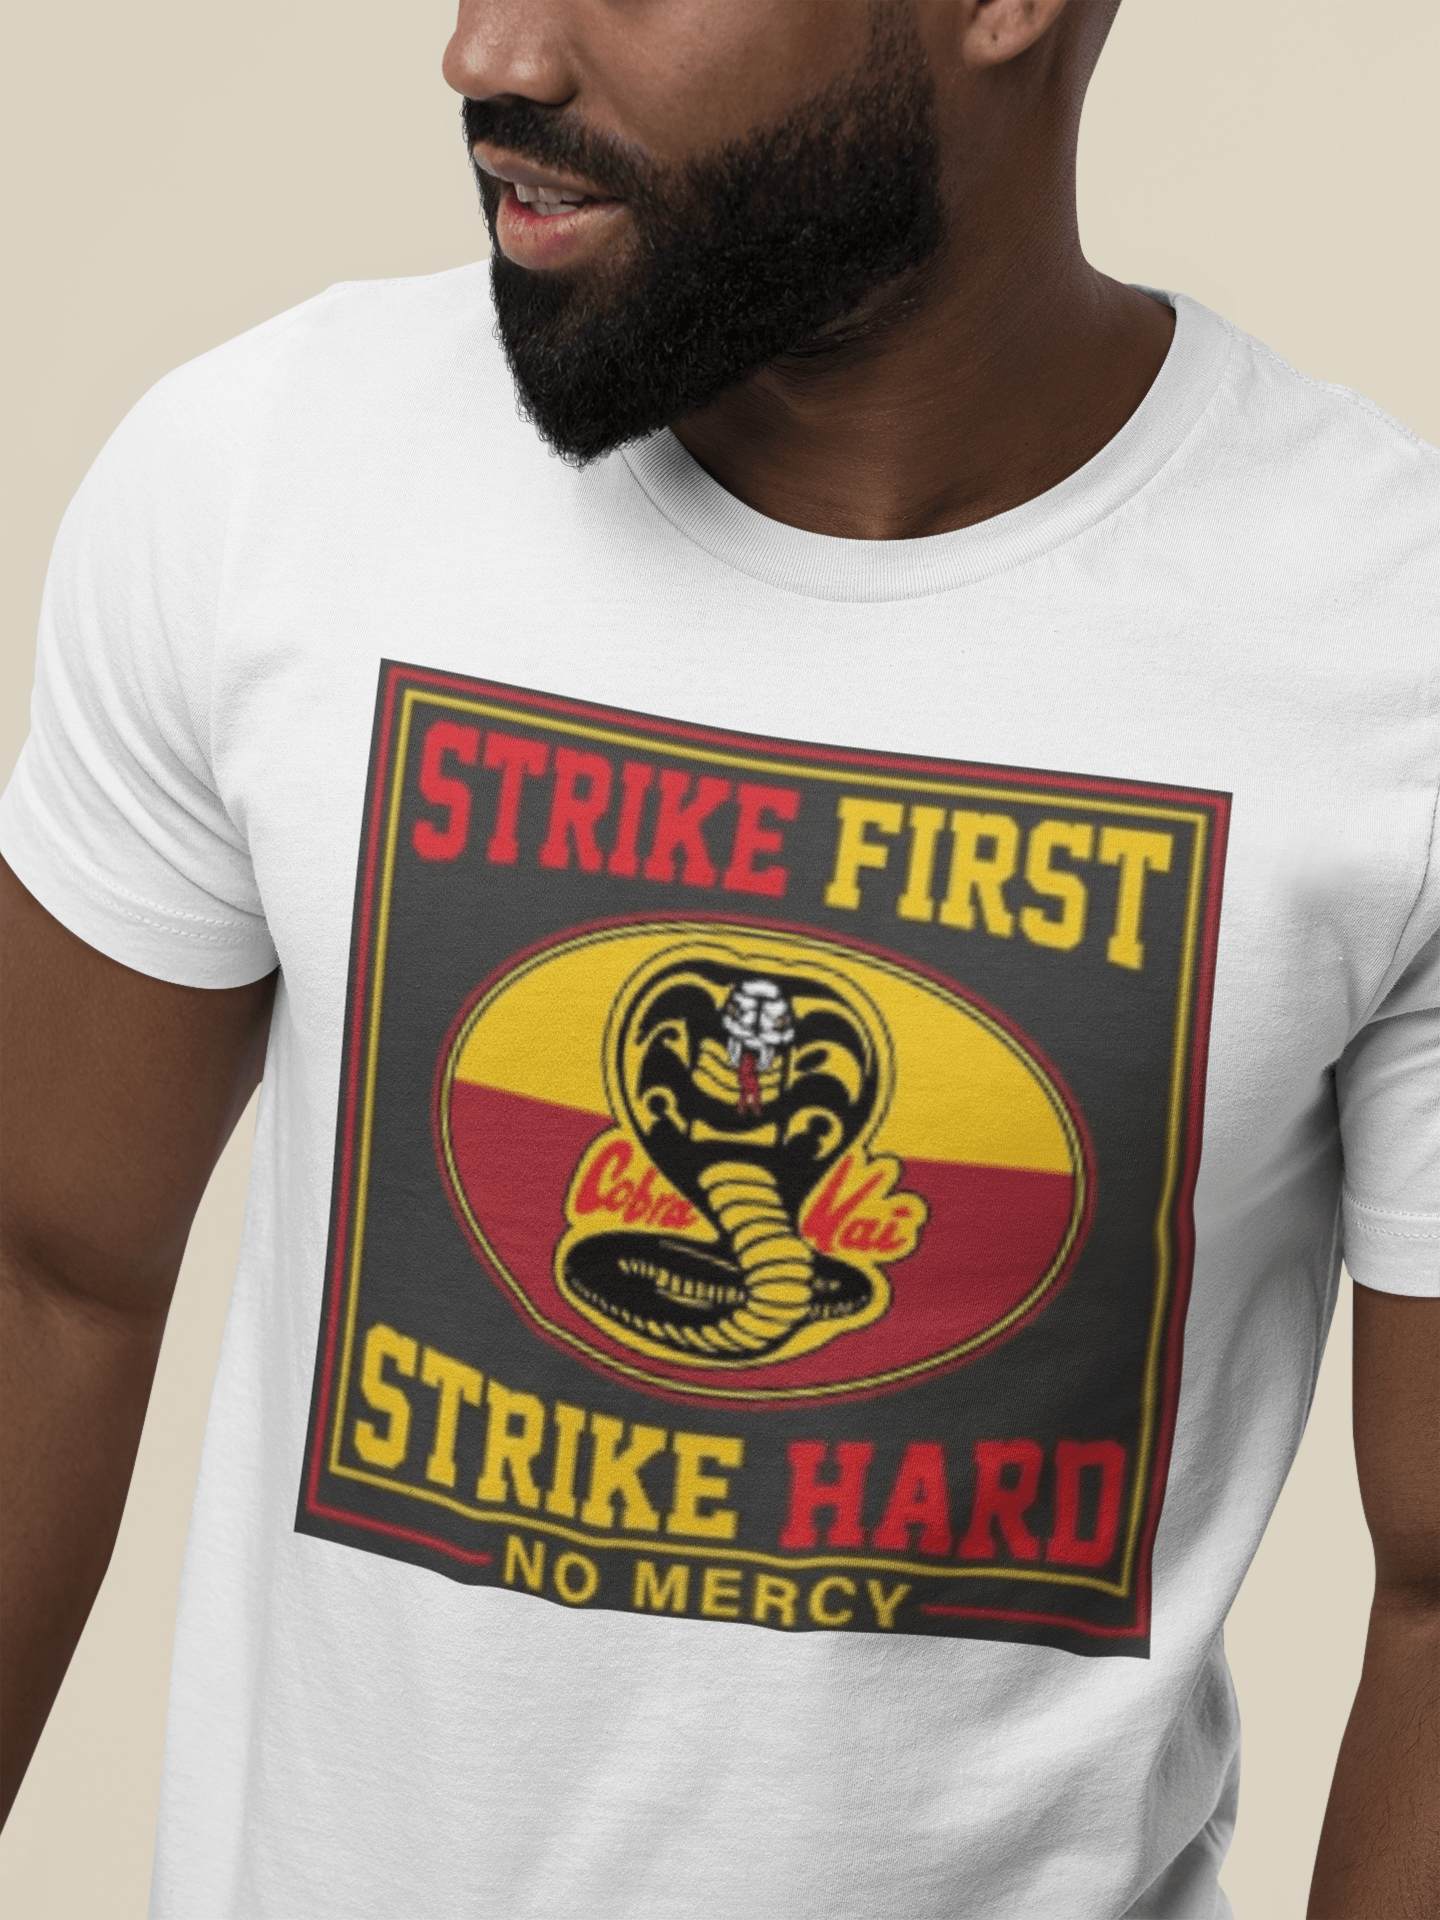 Karate T-shirt Cobra Kai Strike First No Mercy Short Sleeve Ultra Soft Cotton Crewneck Top - TopKoalaTee